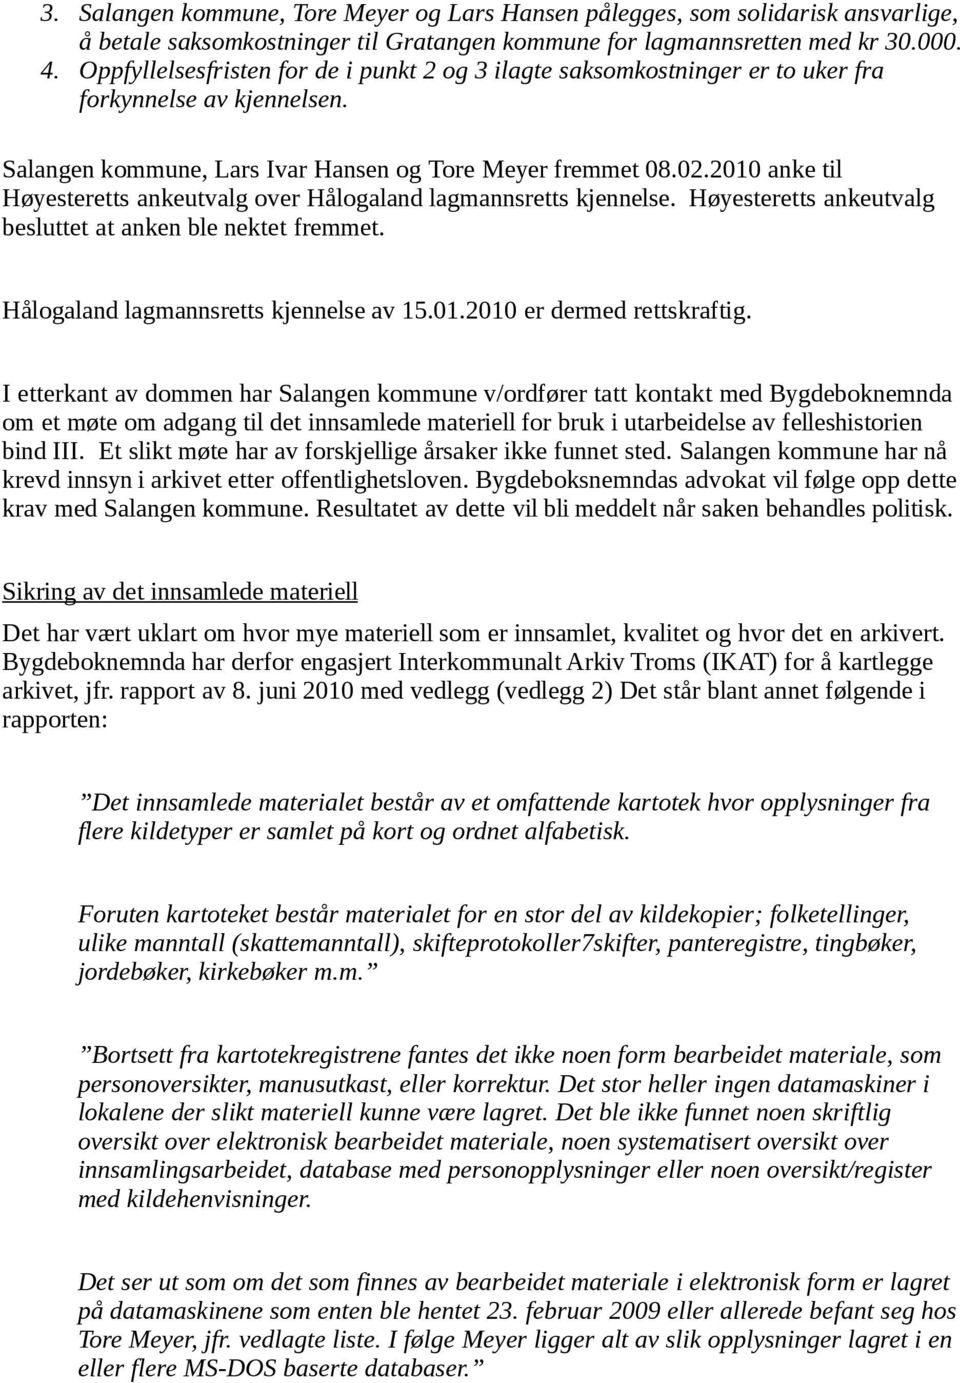 2010 anke til Høyesteretts ankeutvalg over Hålogaland lagmannsretts kjennelse. Høyesteretts ankeutvalg besluttet at anken ble nektet fremmet. Hålogaland lagmannsretts kjennelse av 15.01.2010 er dermed rettskraftig.